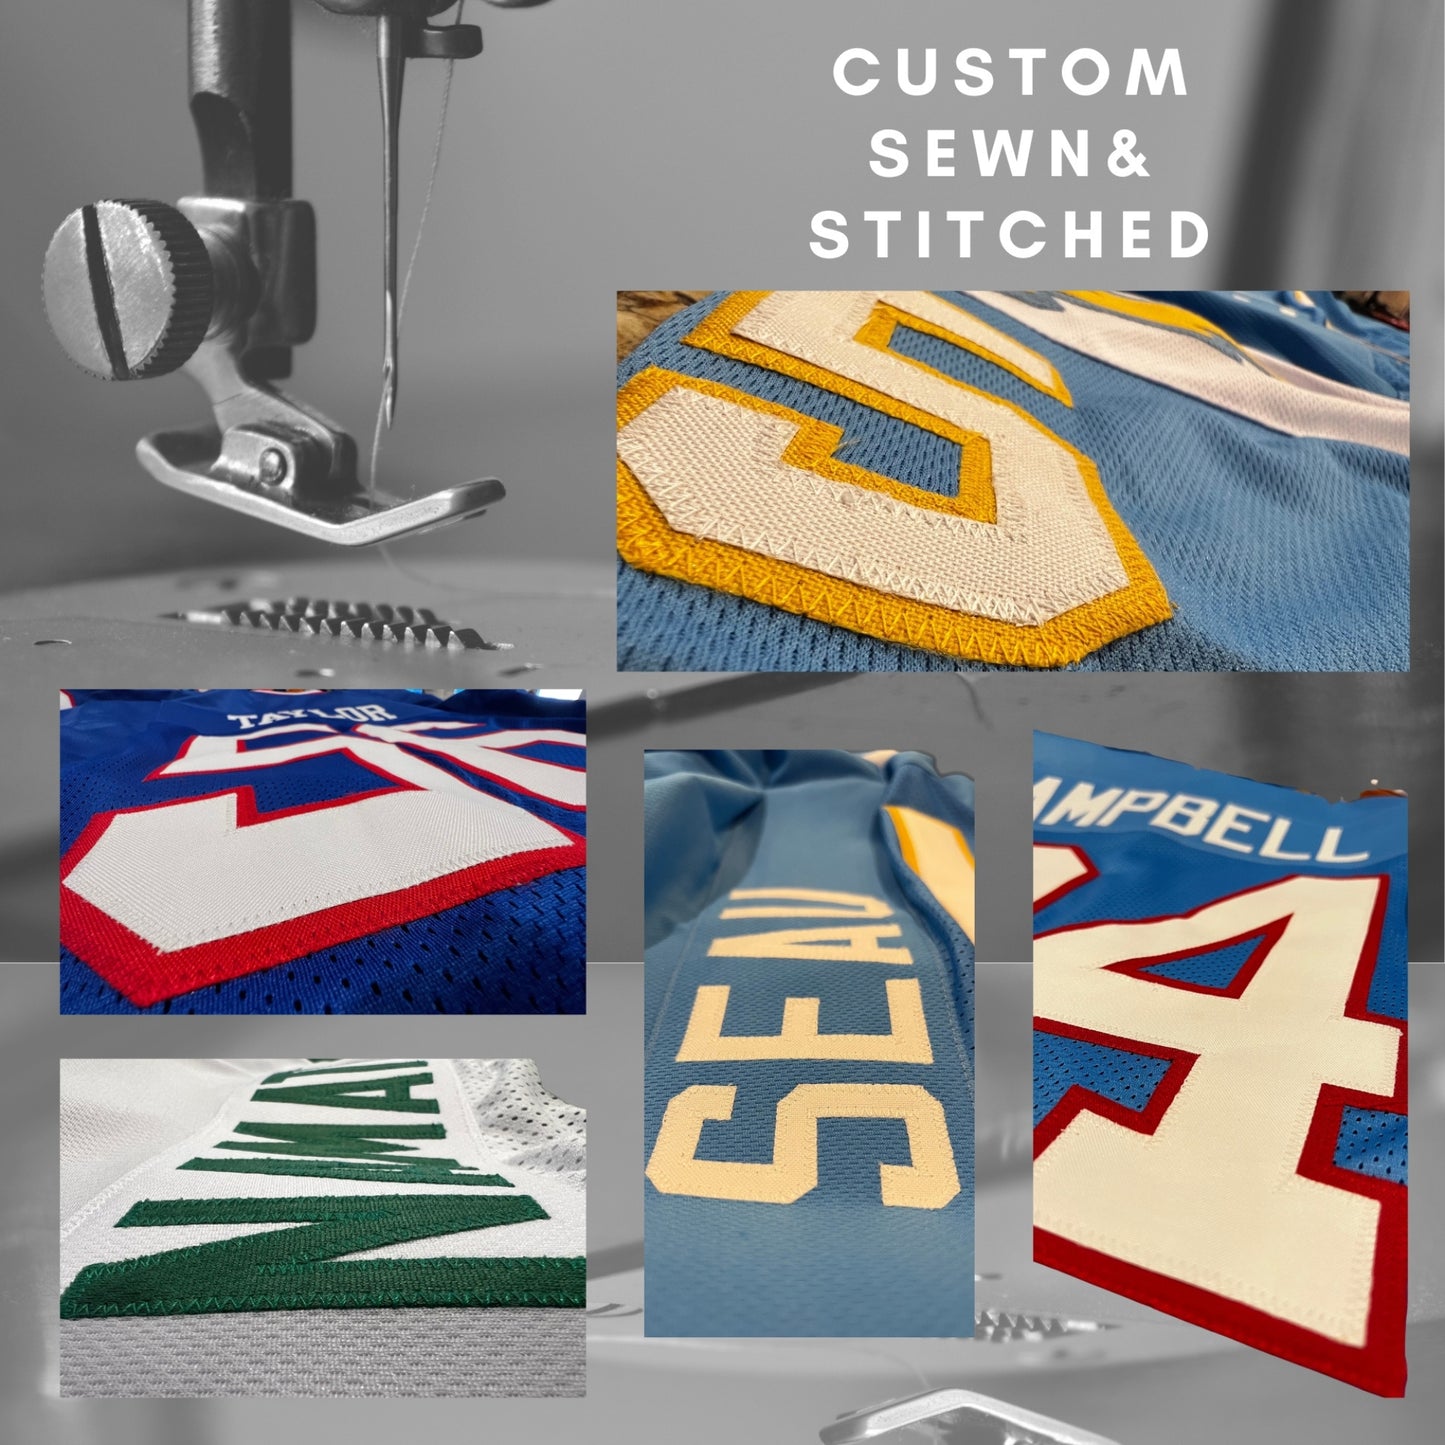 Christian Okoye Jersey Red Kansas City | M-5XL Custom Sewn Stitched